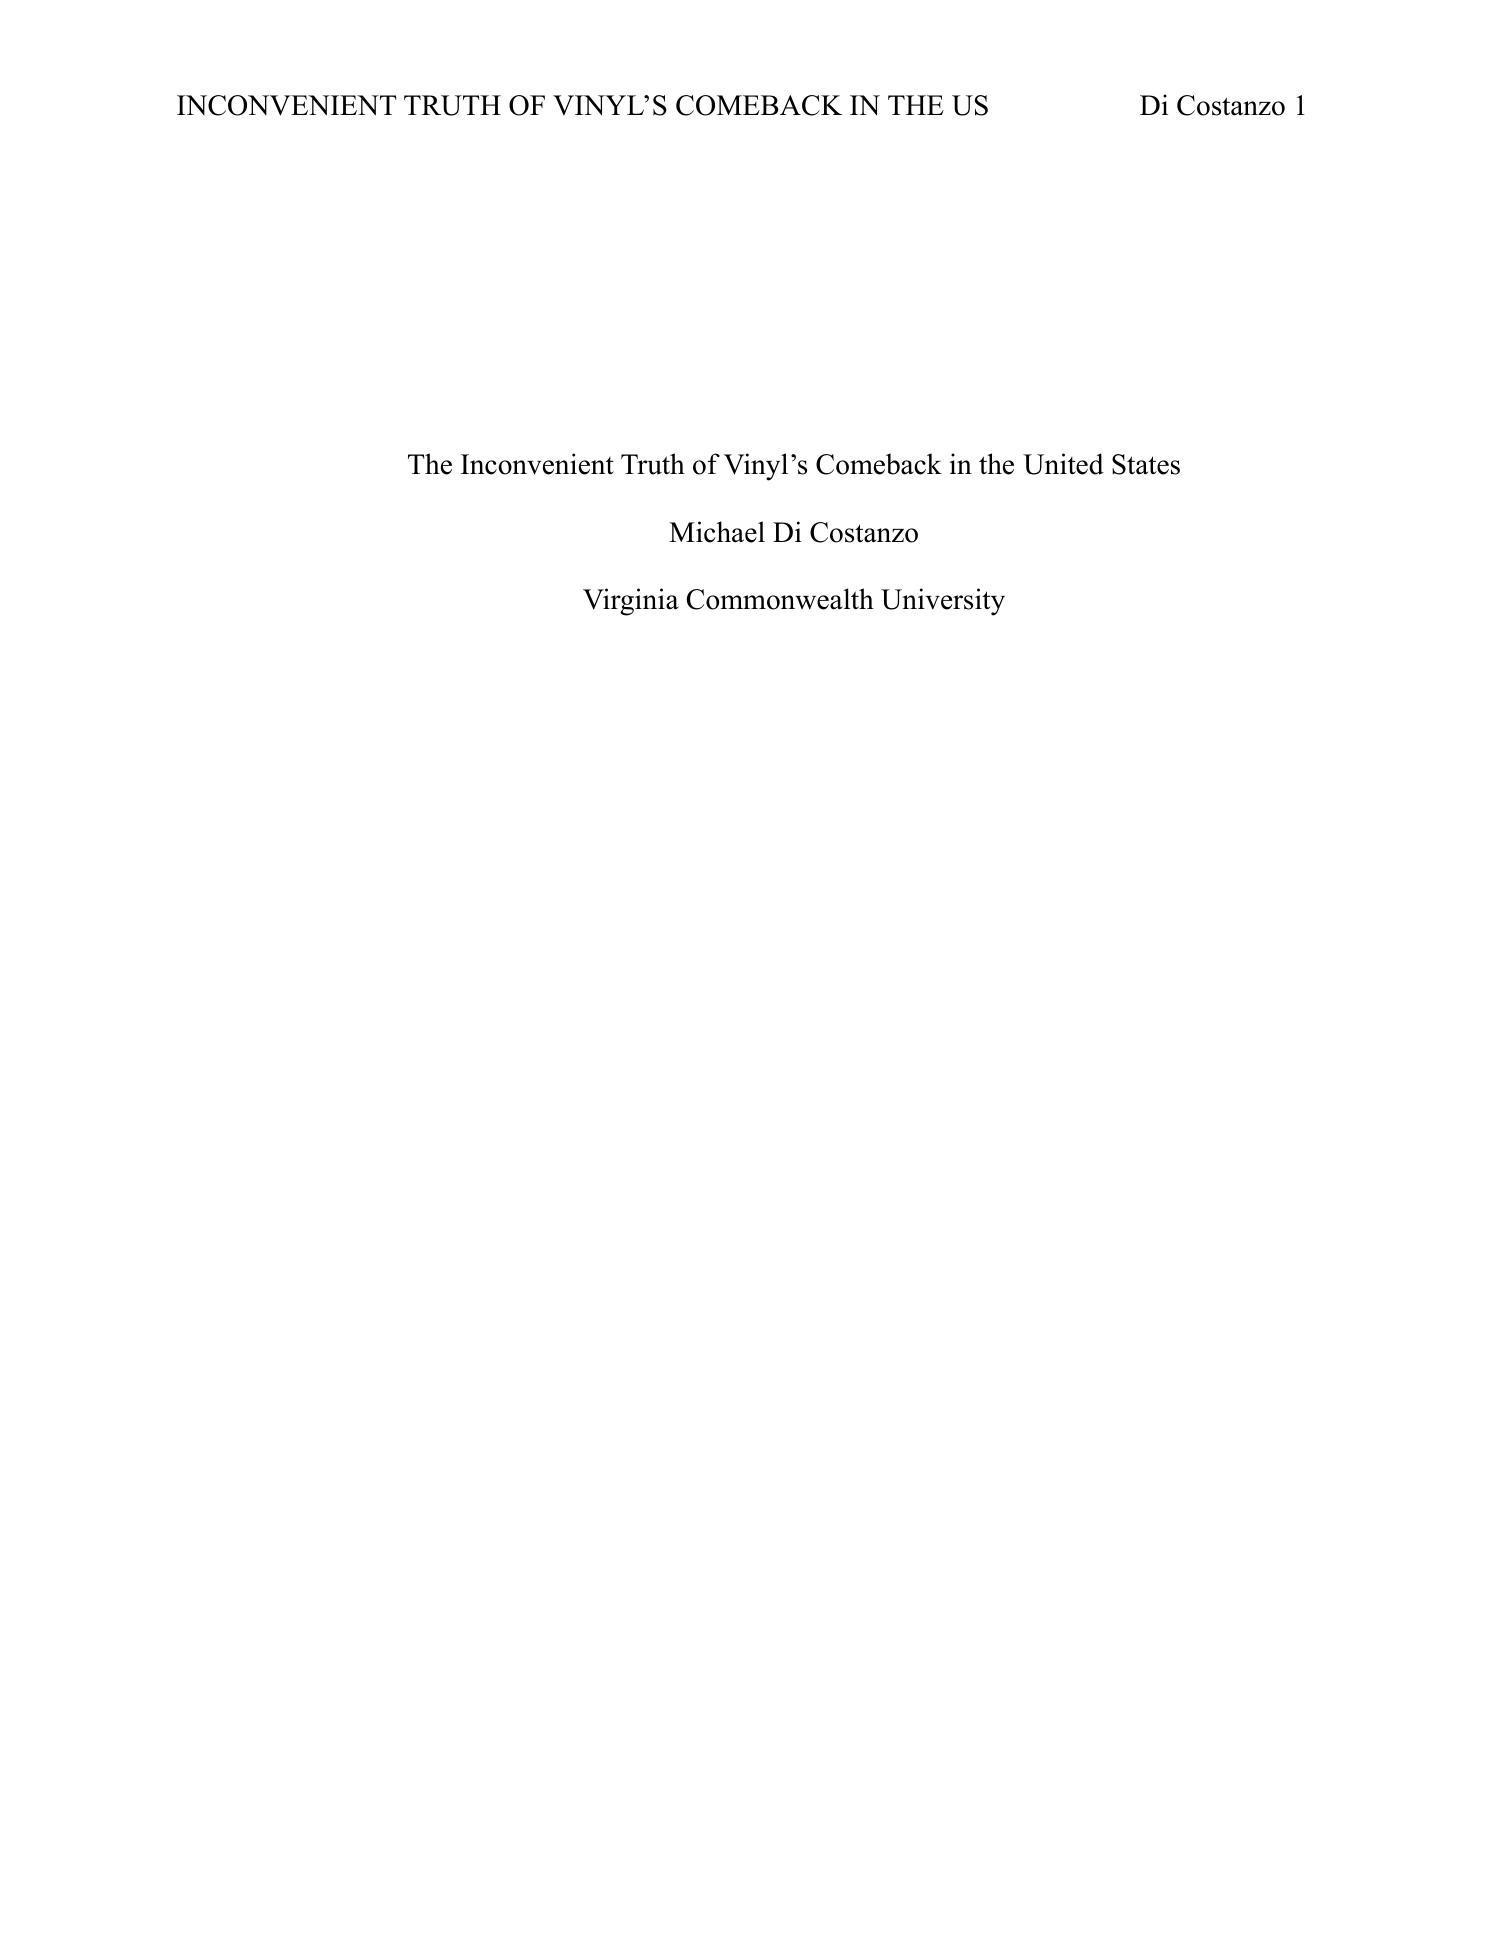 final research paper pdf